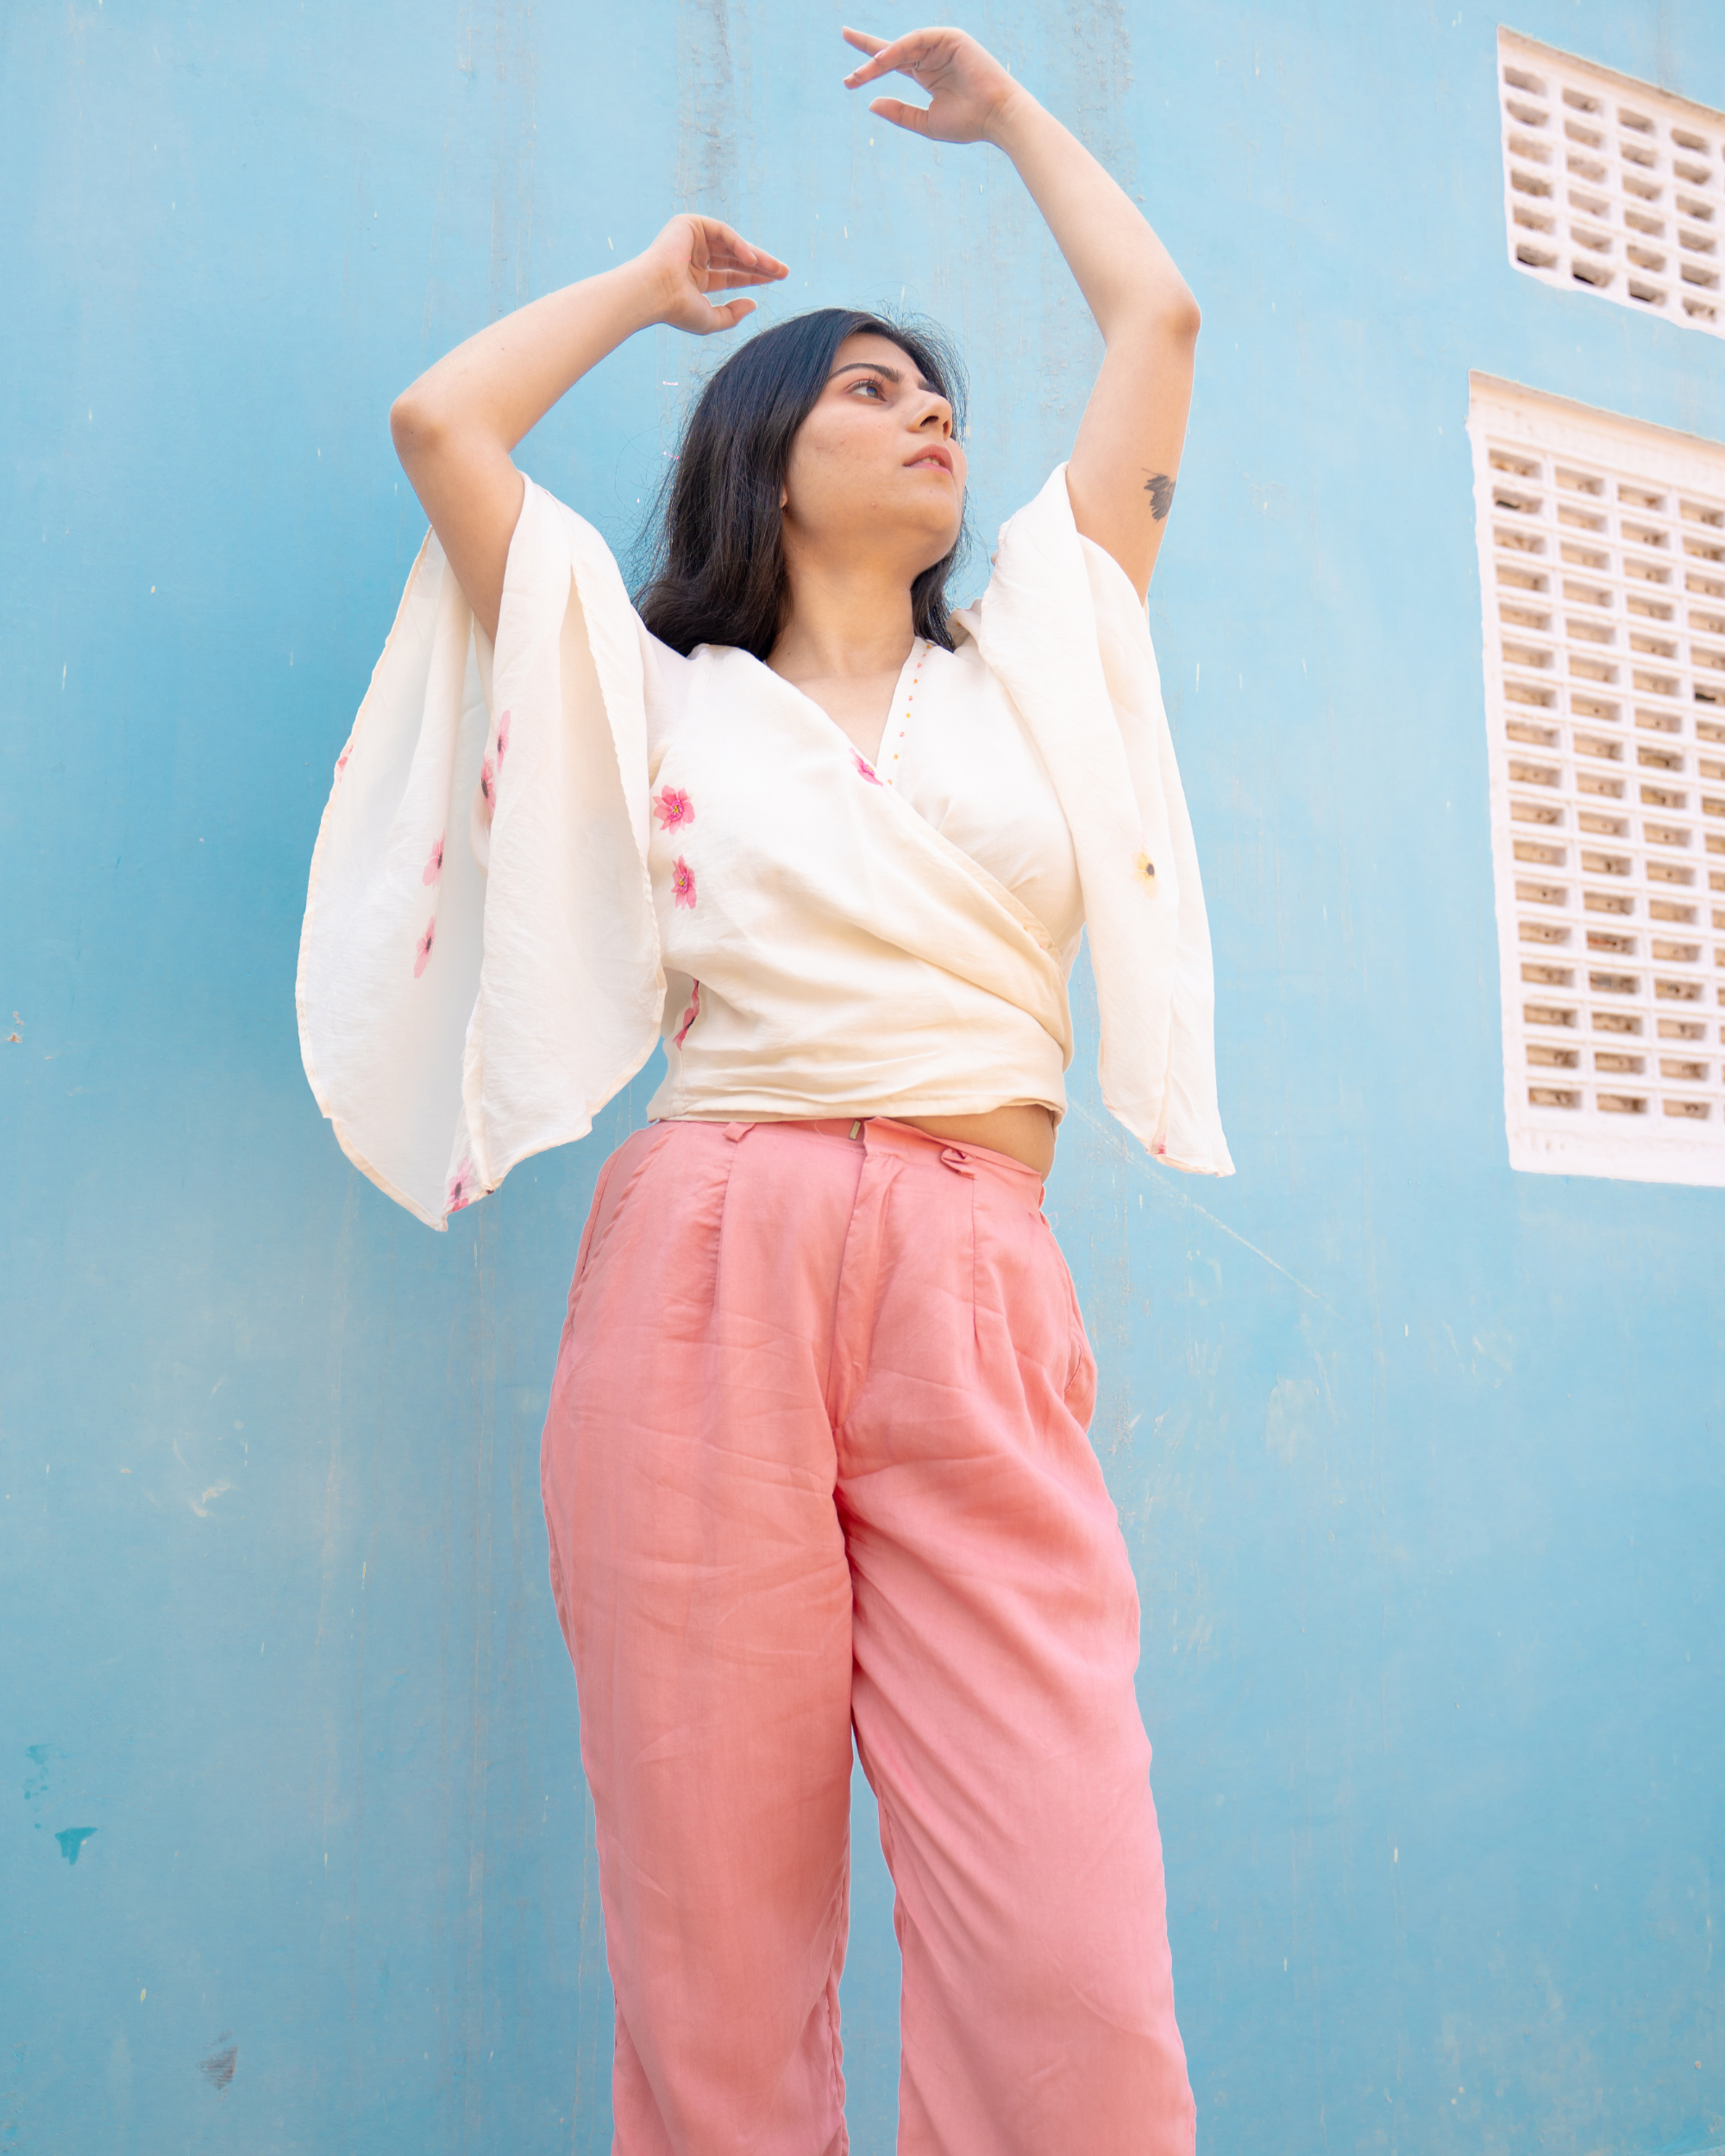 Buy Pink Pants for Women by ZRI Online  Ajiocom